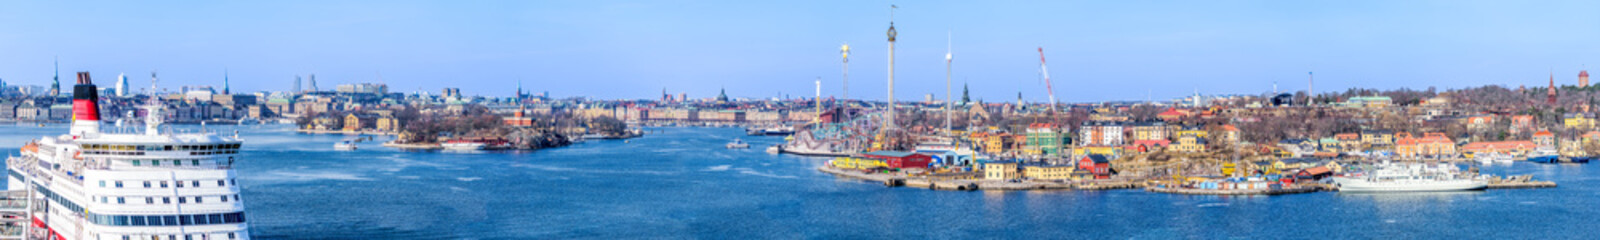 Vue panoramique de la ville de stockholm